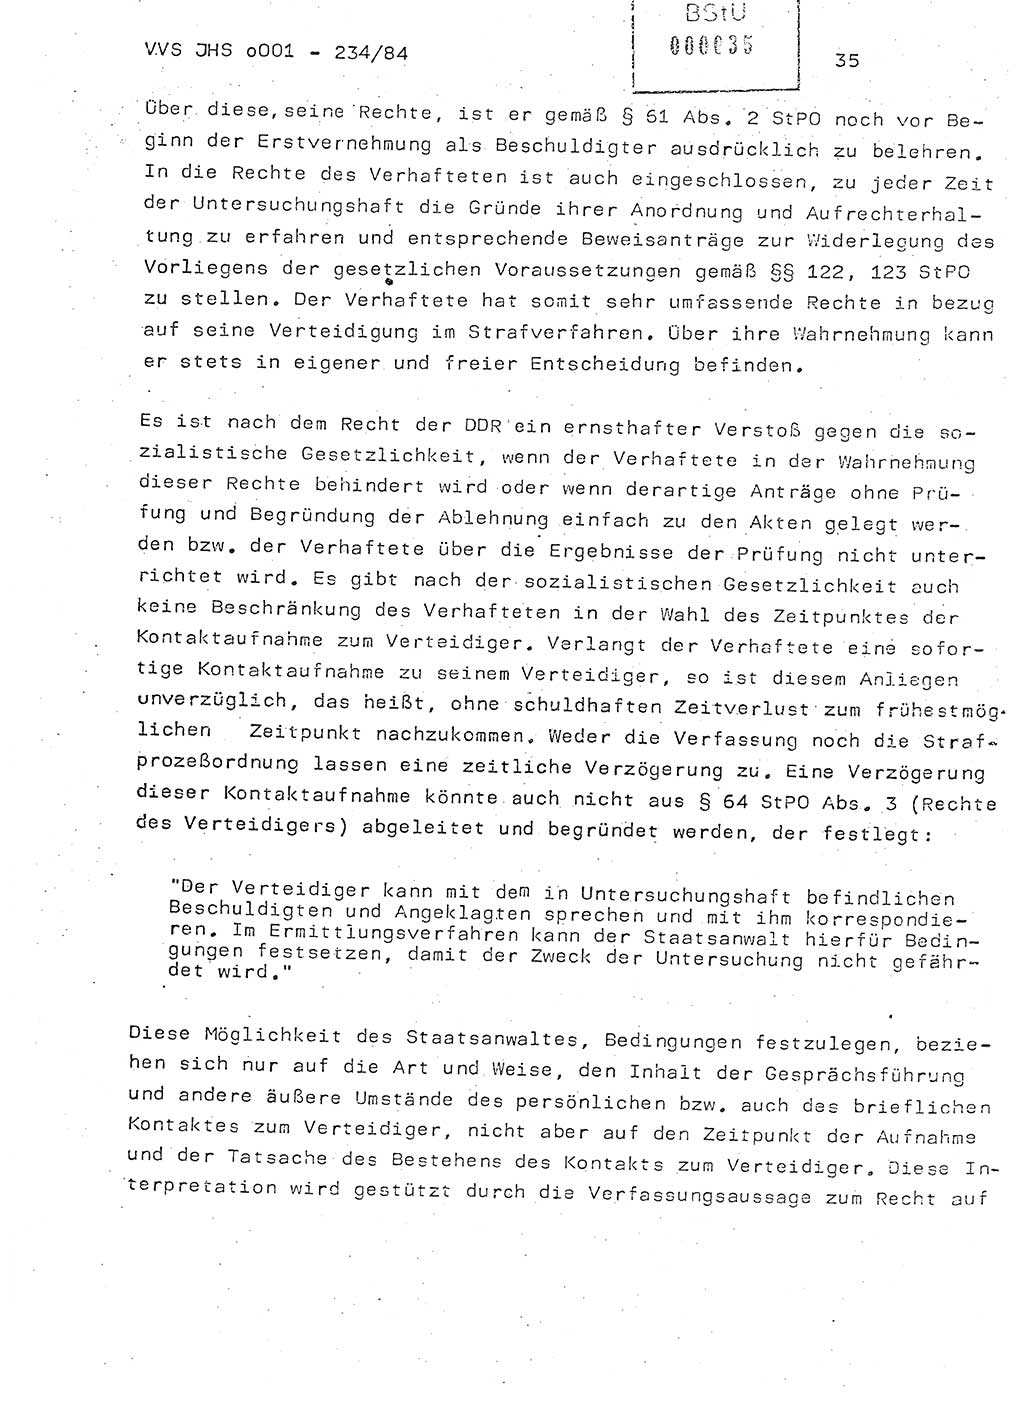 Dissertation Oberst Siegfried Rataizick (Abt. ⅩⅣ), Oberstleutnant Volkmar Heinz (Abt. ⅩⅣ), Oberstleutnant Werner Stein (HA Ⅸ), Hauptmann Heinz Conrad (JHS), Ministerium für Staatssicherheit (MfS) [Deutsche Demokratische Republik (DDR)], Juristische Hochschule (JHS), Vertrauliche Verschlußsache (VVS) o001-234/84, Potsdam 1984, Seite 35 (Diss. MfS DDR JHS VVS o001-234/84 1984, S. 35)